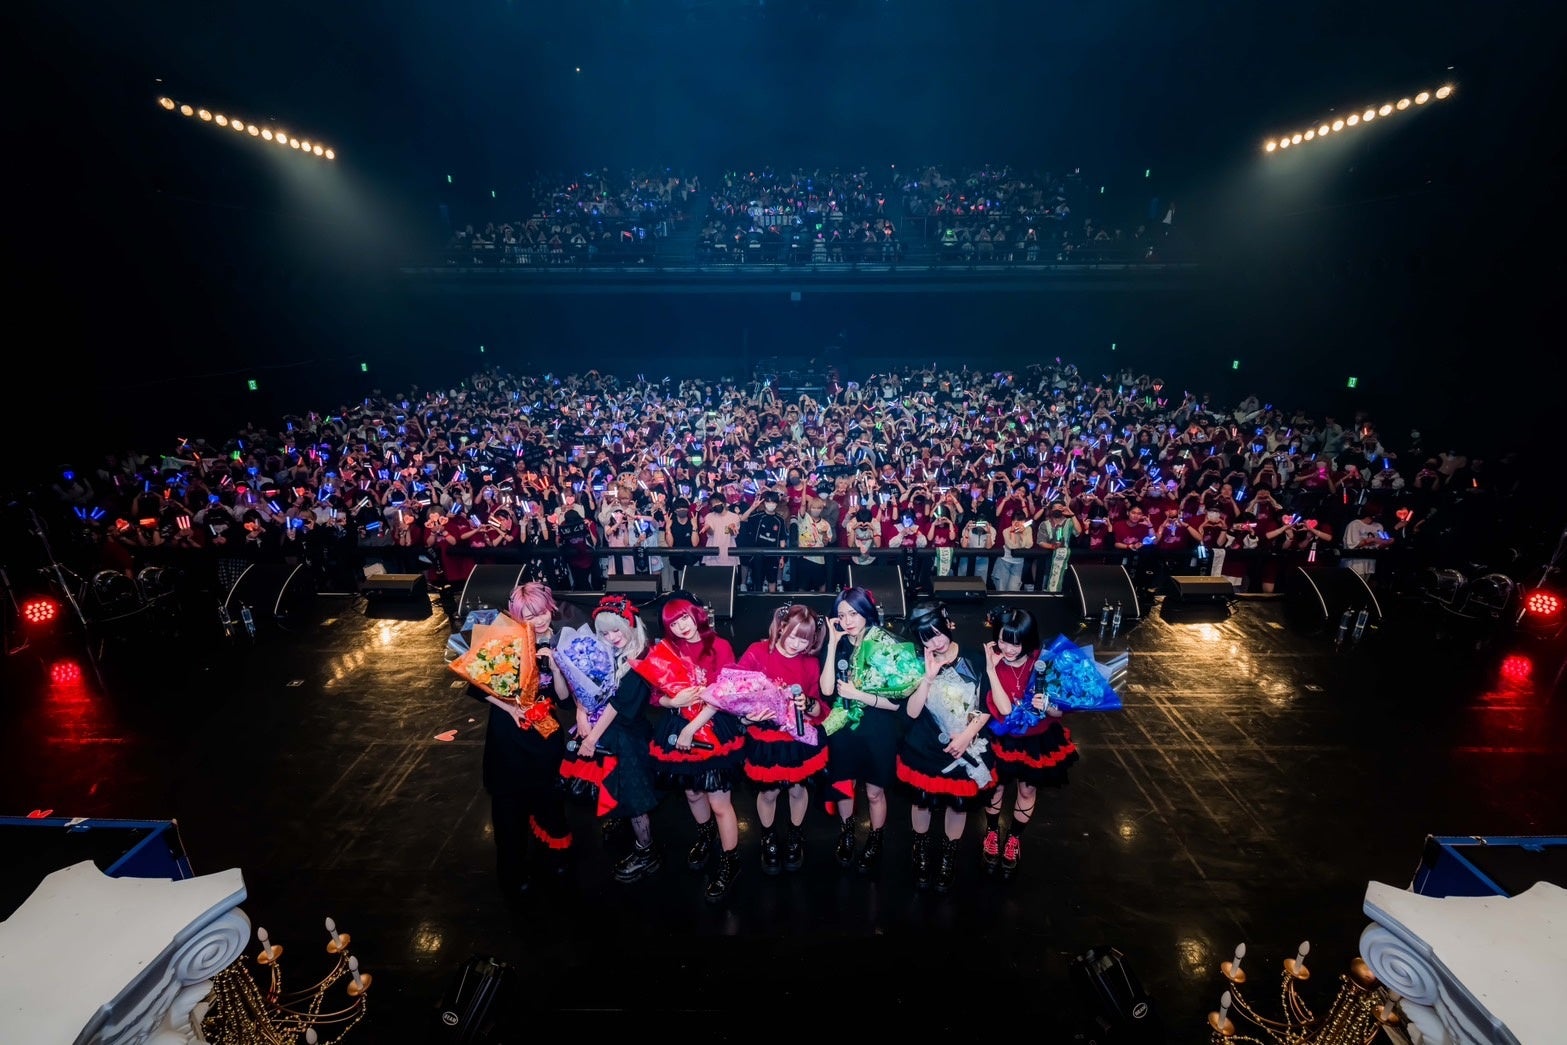 7人組アイドルグループAVAMの1周年記念“AVAM 1st Anniversary ONEMAN LIVE『R-Majesty』”KT Zepp Yokohamaにて開催されたライブの様子をレポート